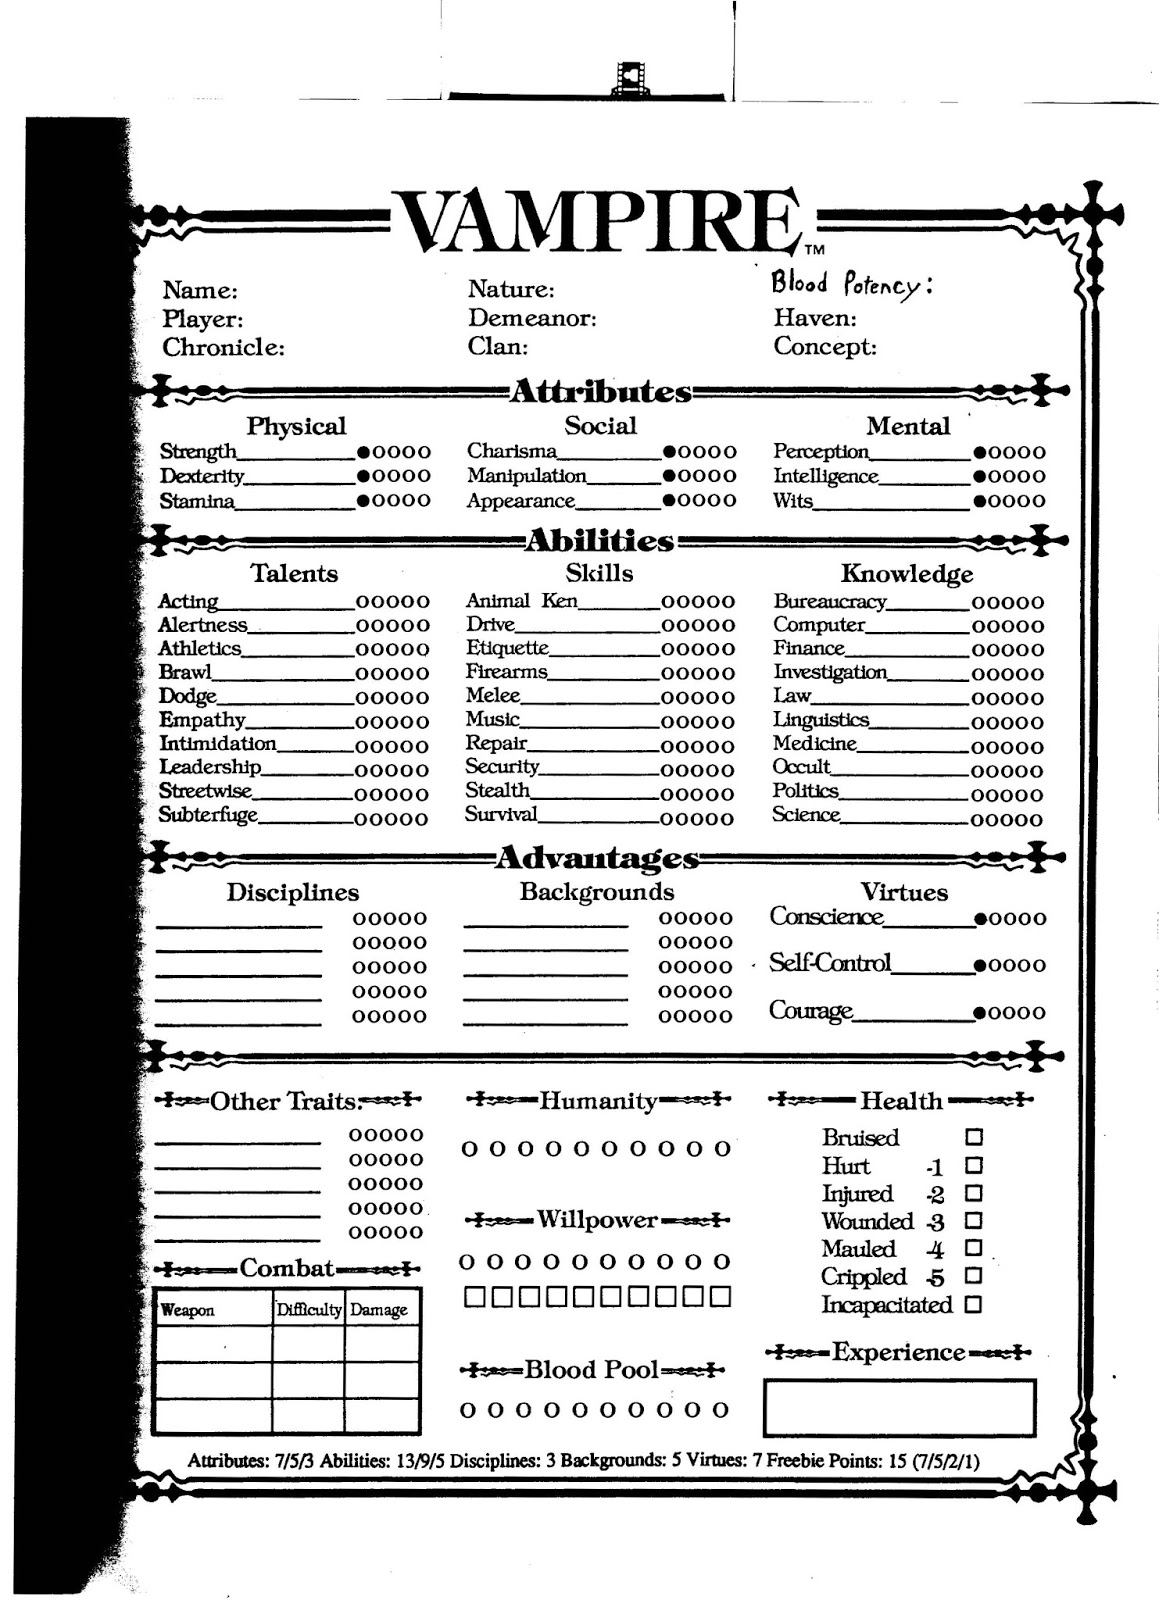 Vampire The Masquerade Character Sheet